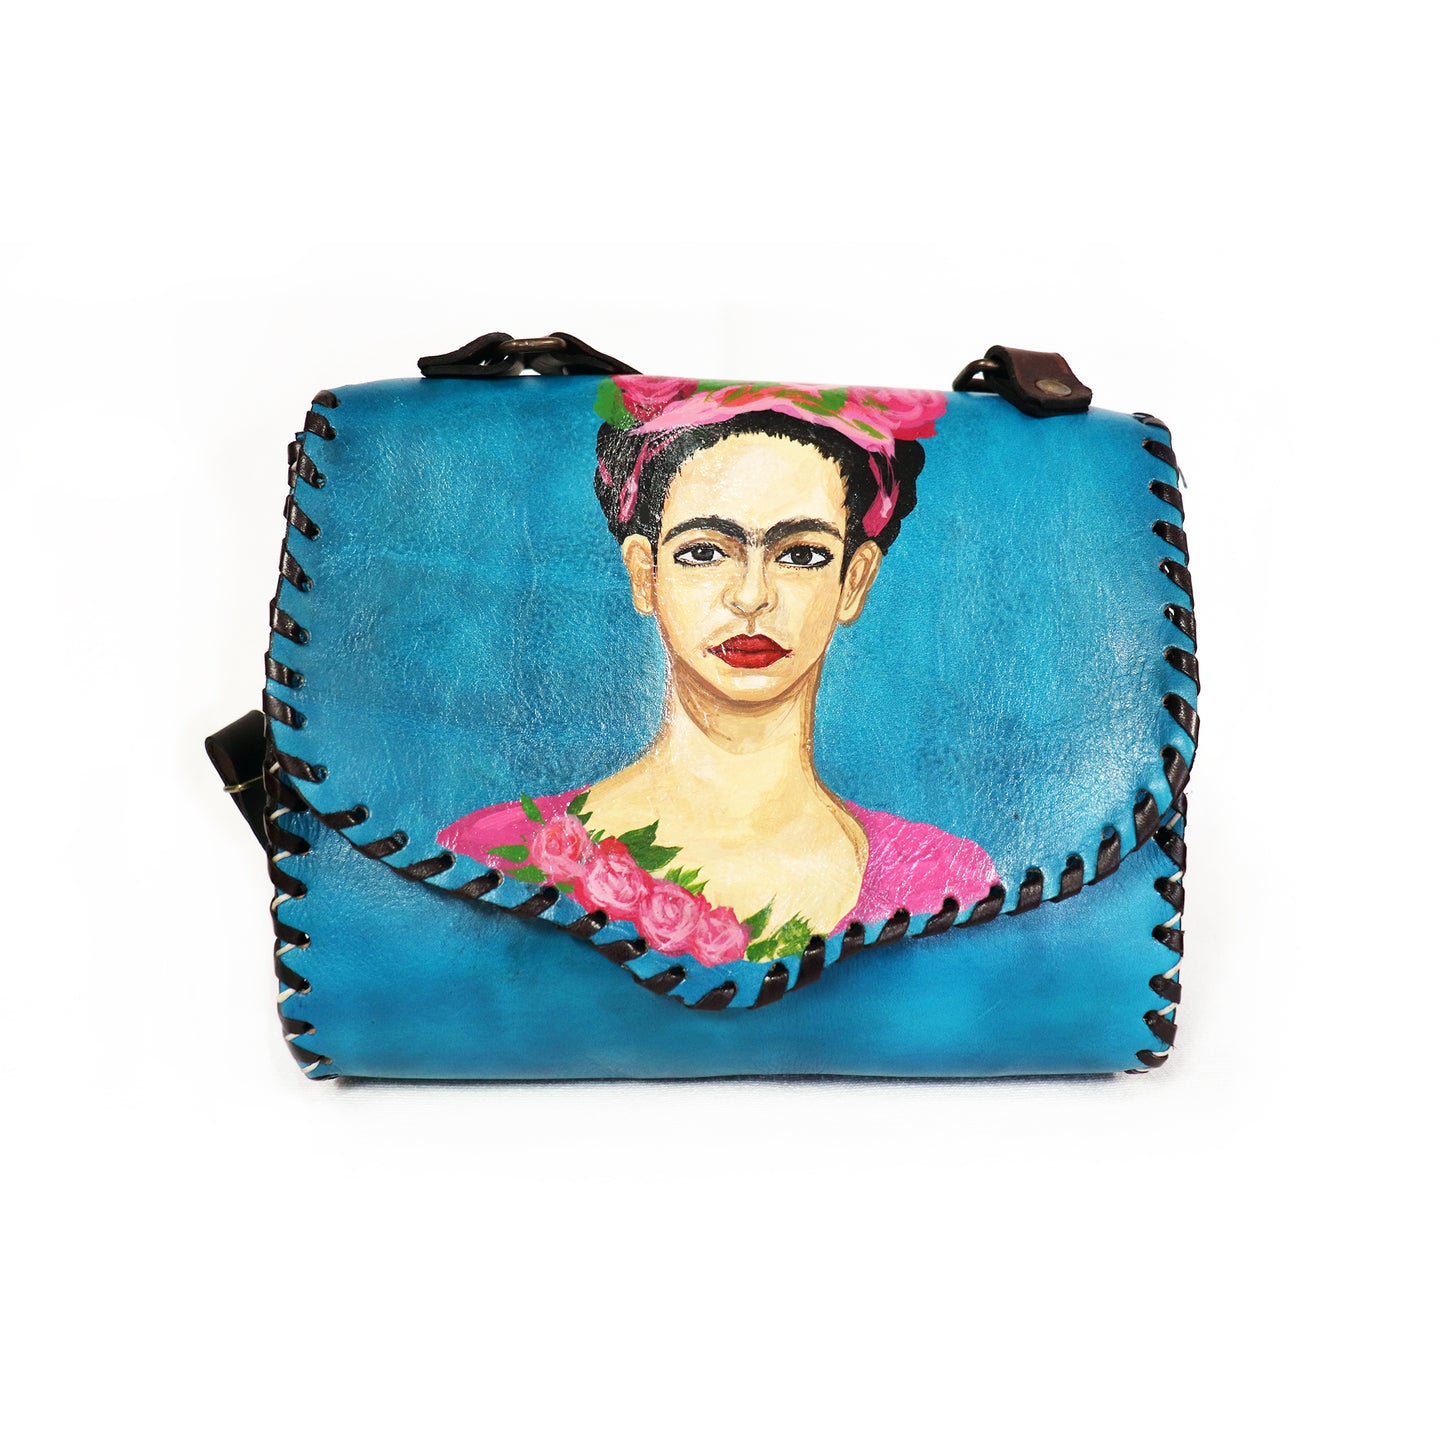 Frida Kahlo - Front Portrait Blue Handbag and Clutch set